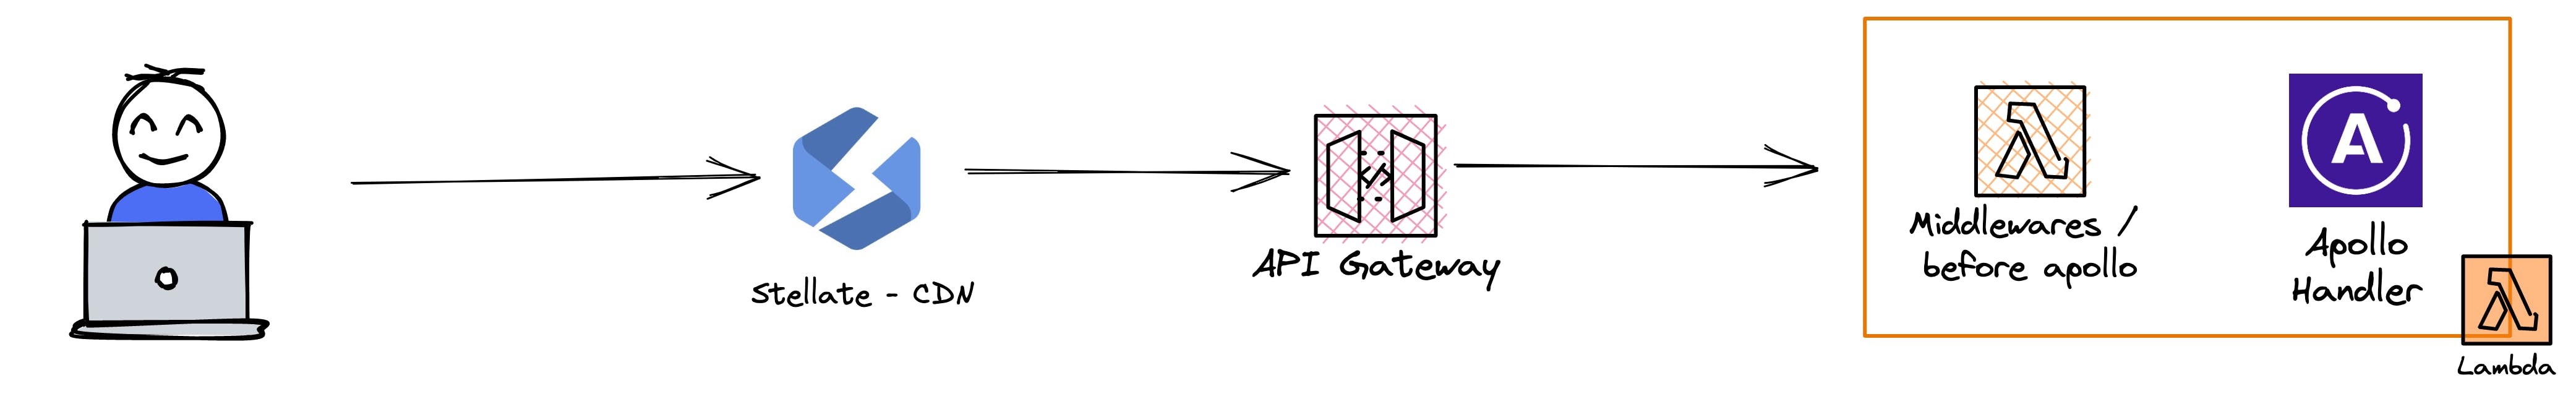 Hashnode's API Infrastructure